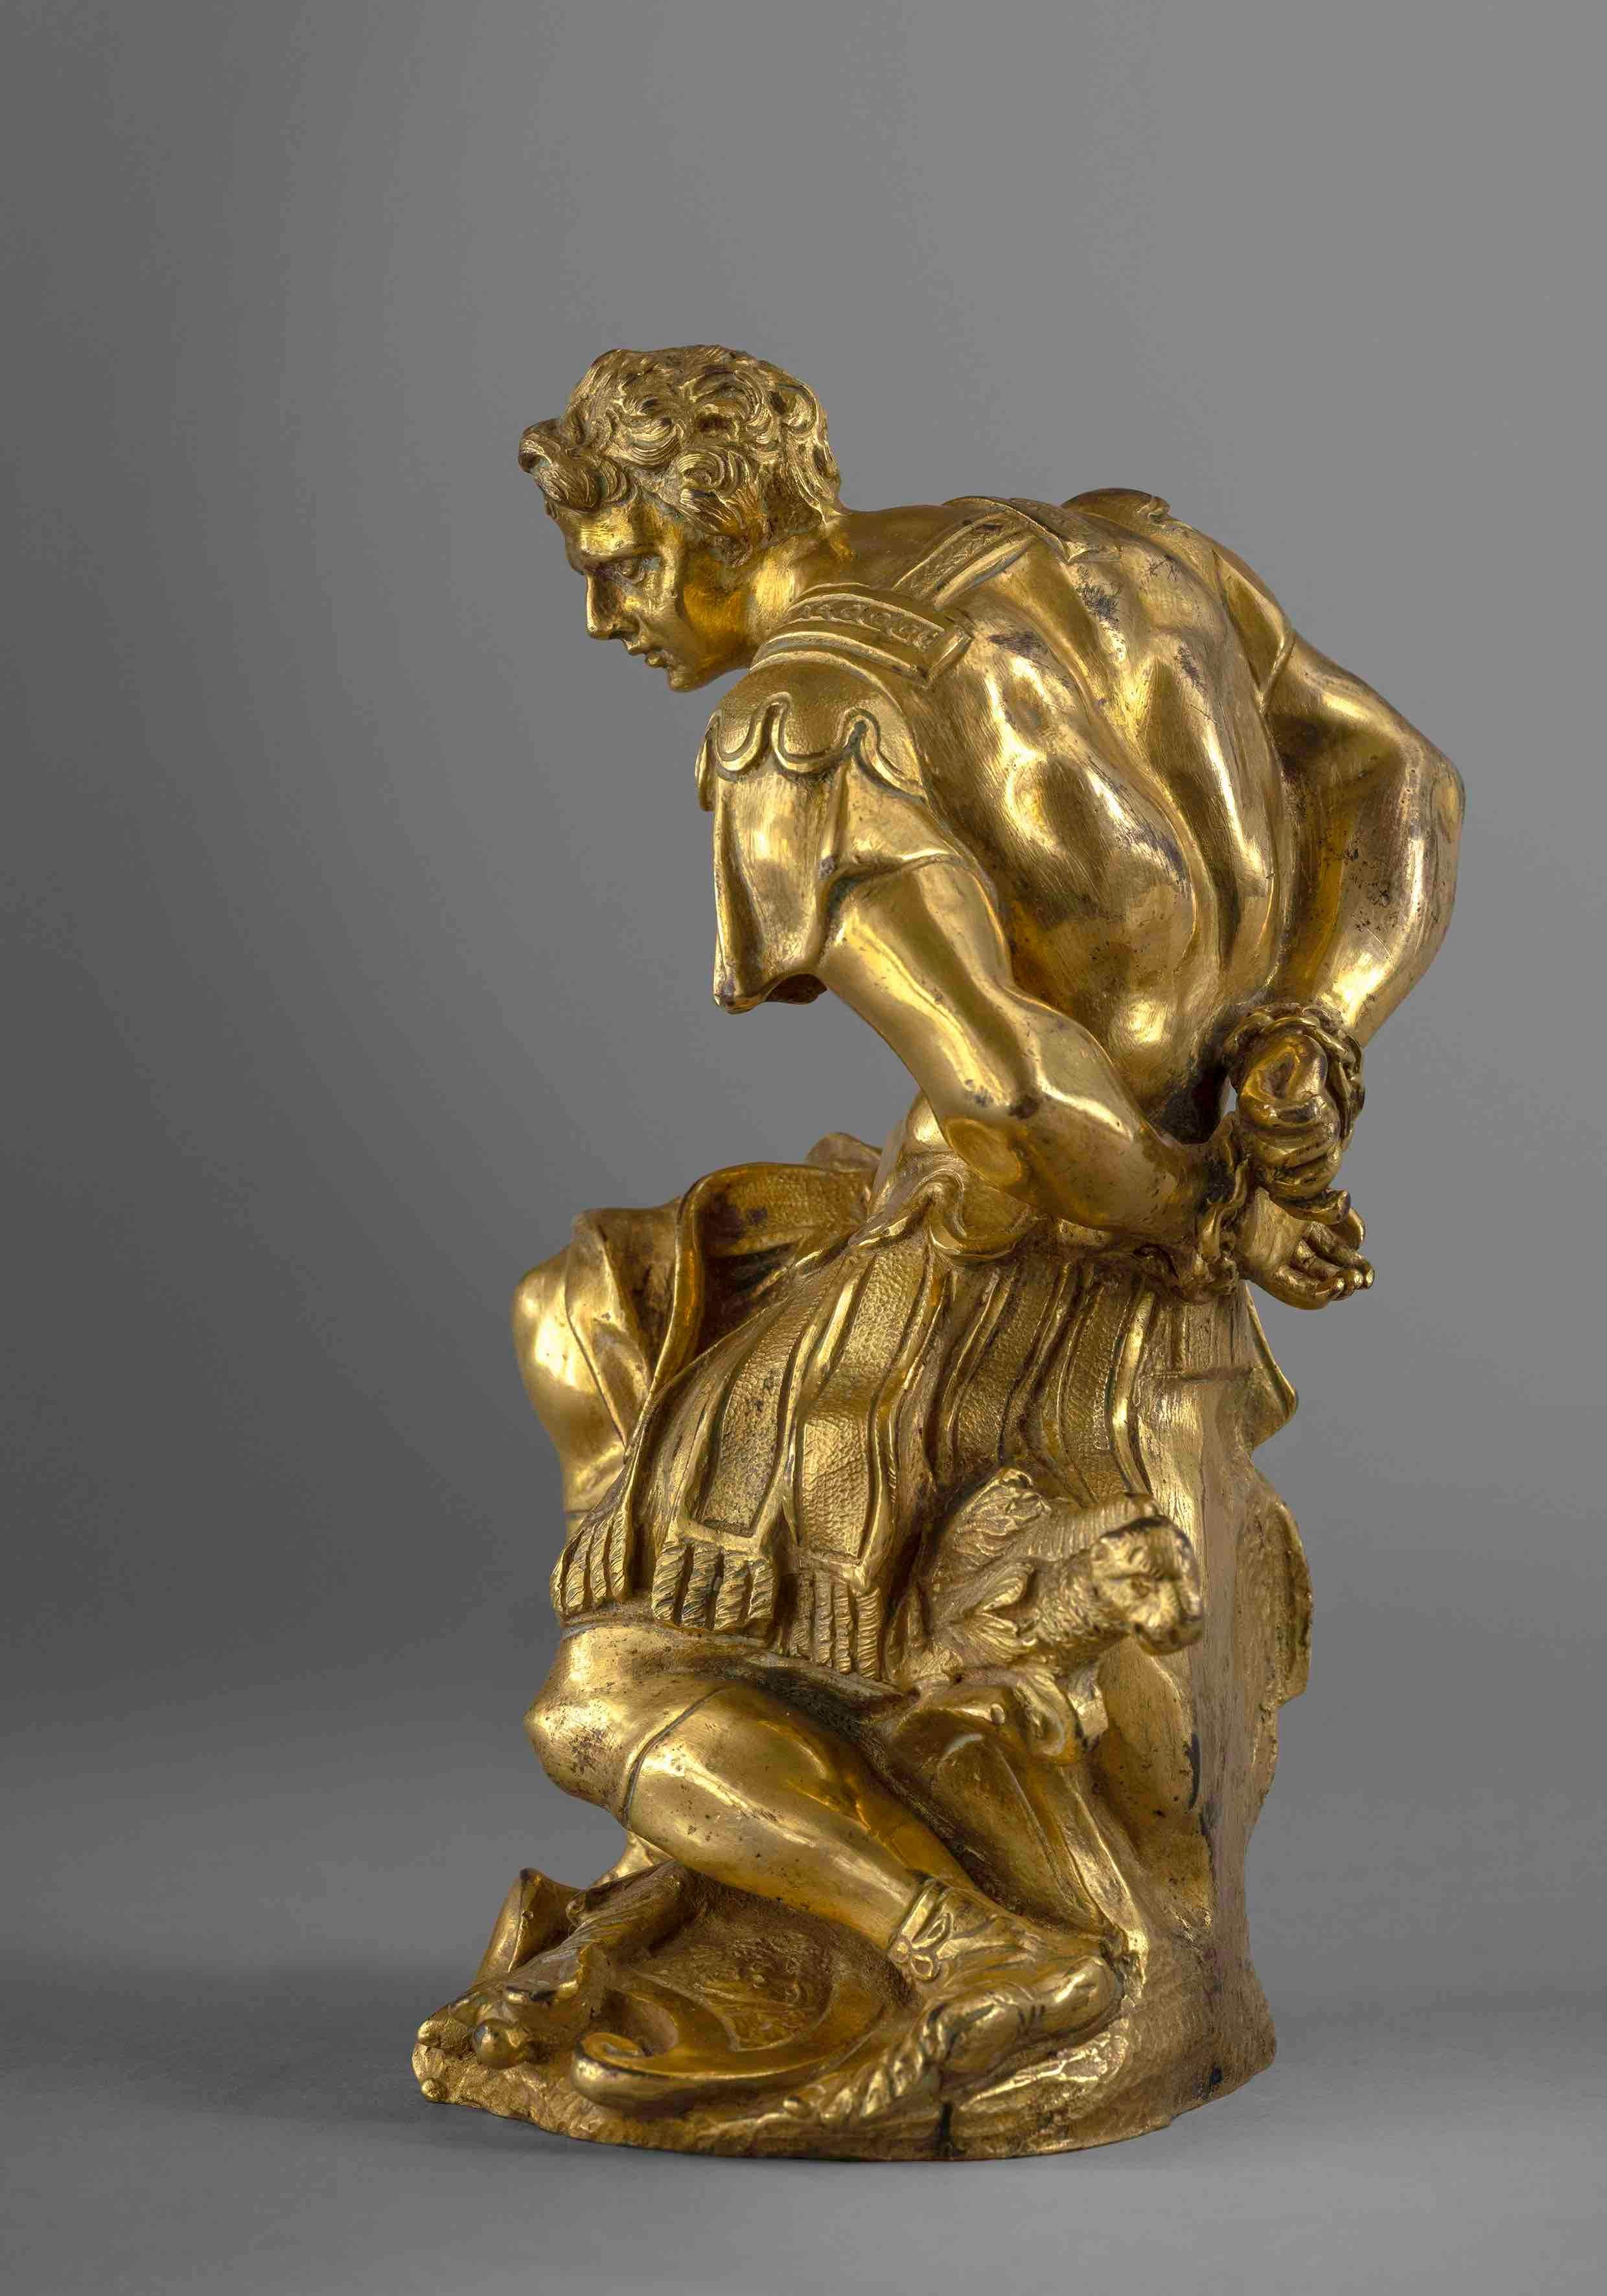 Un soldat captif

Bronze doré, cire perdue
Italie (Rome), XVIIe siècle
H 17 x DIAS 10 cm
H 6 2/3 x Dia 4 inch

Le XVIIe siècle a vu l'épanouissement de l'expression artistique dans toute l'Europe, en particulier à Rome, où le mouvement baroque a